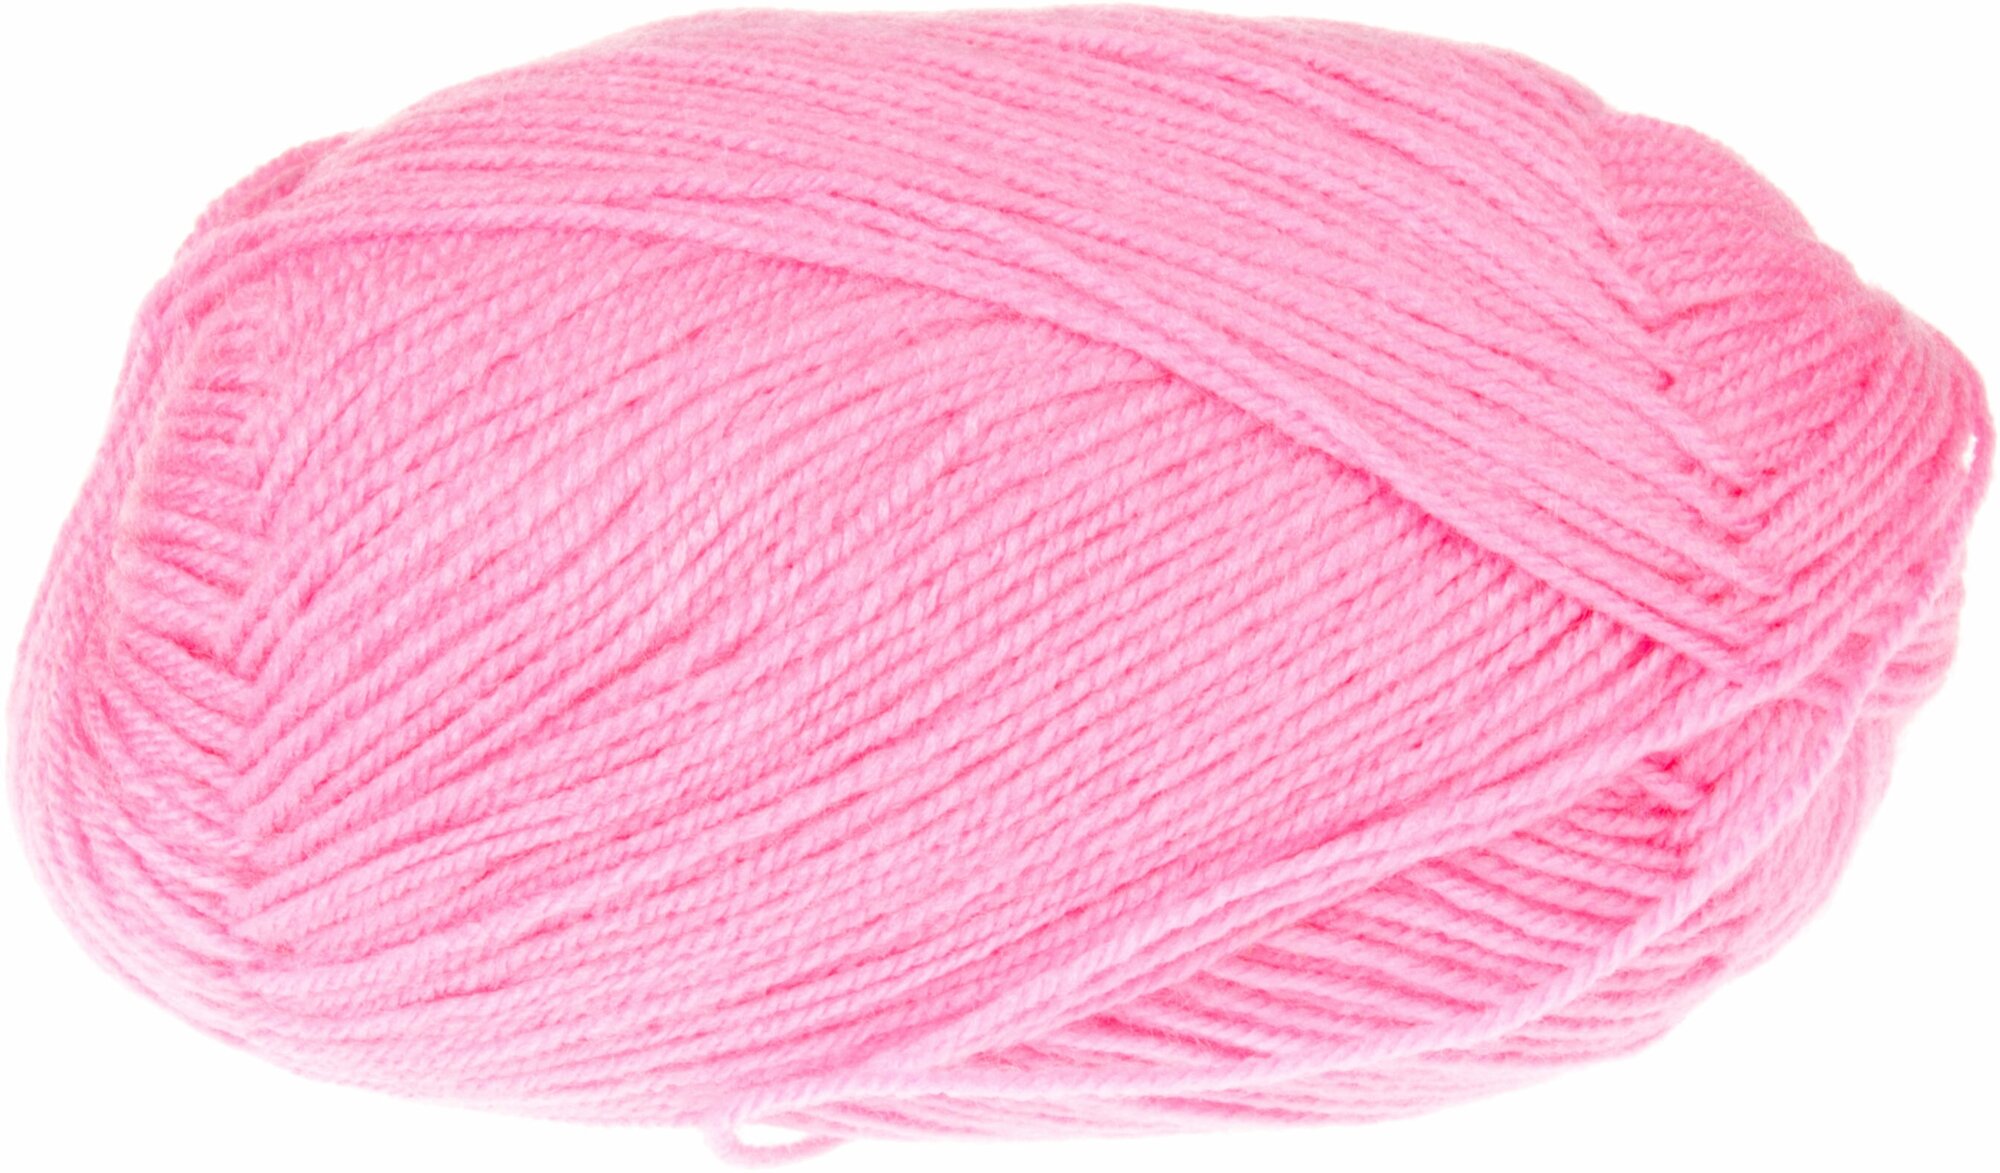 Пряжа Пехорка Детская новинка ярко-розовый (11), 100%высокообъемный акрил, 200м, 50г, 2шт